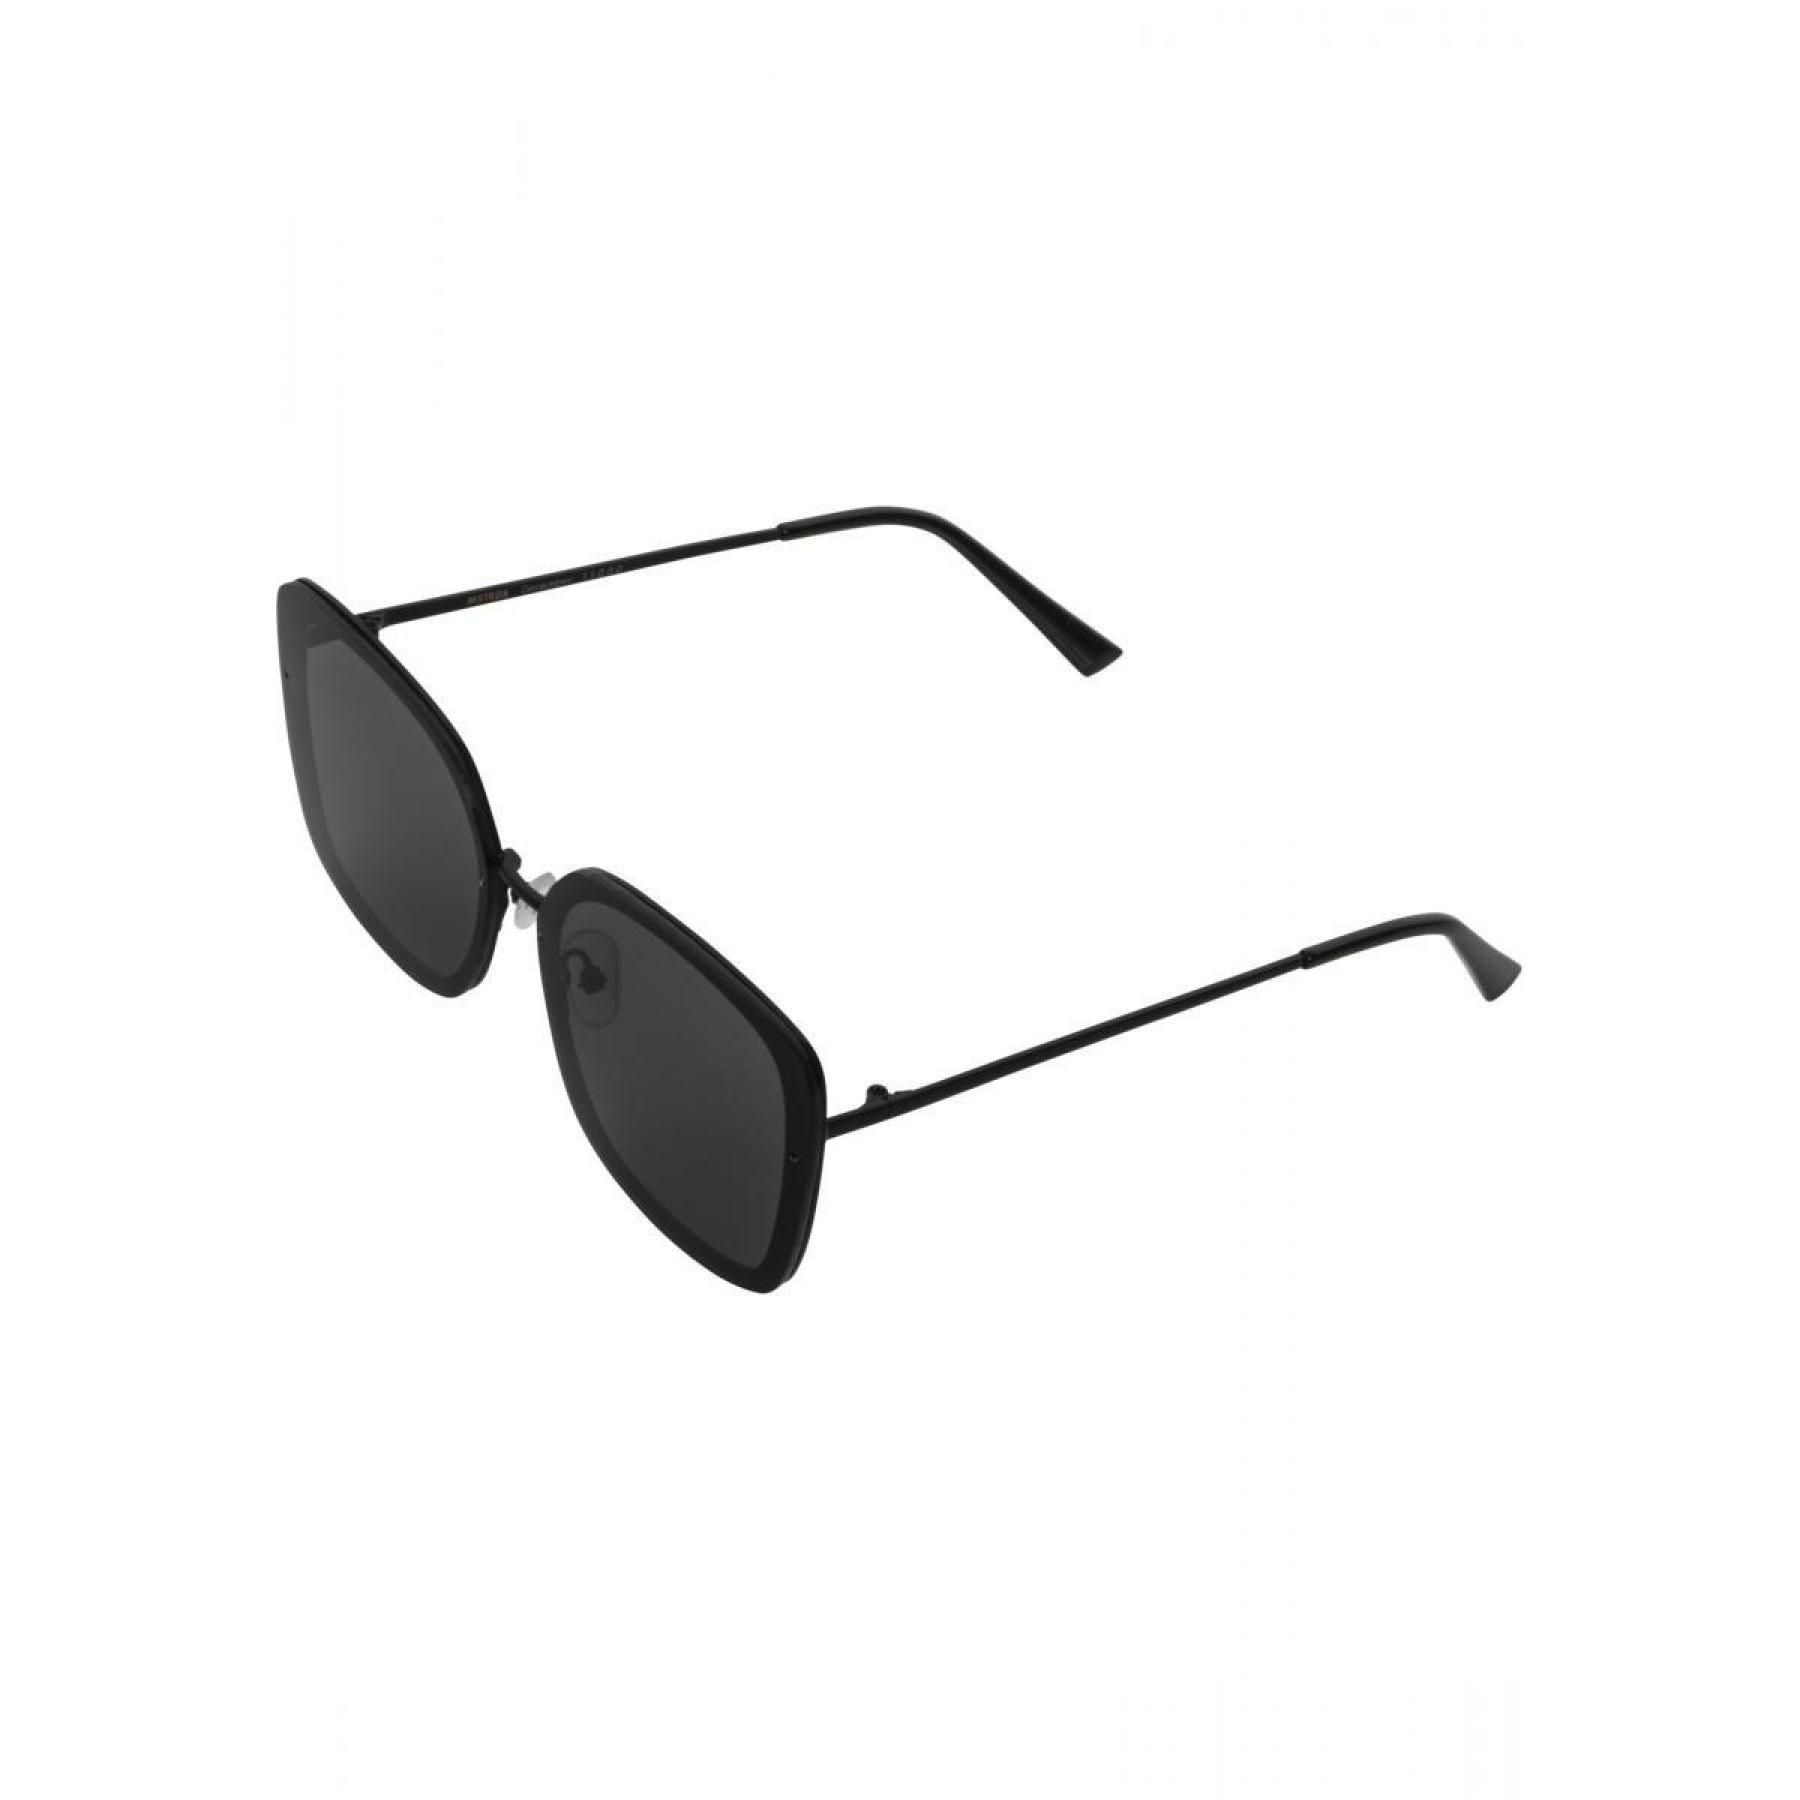 Sunglasses Masterdis december